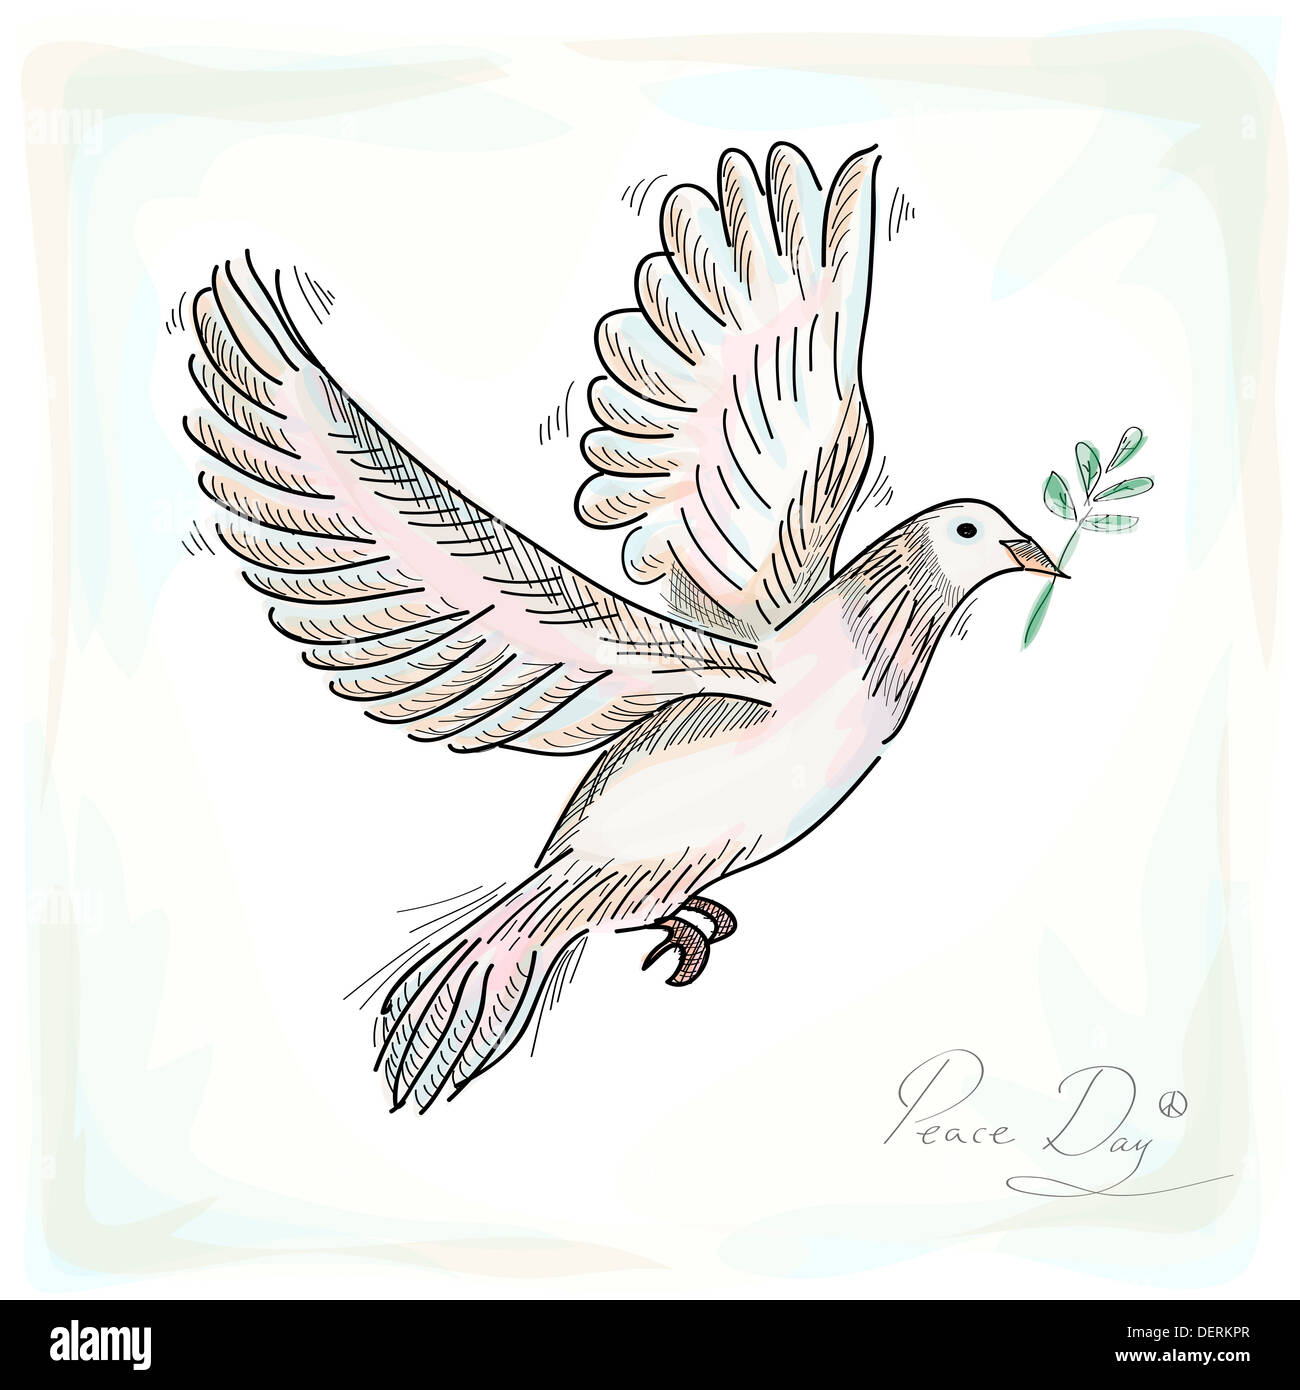 Colombe symbole de paix à la main oiseau avec texture background. Fichier vectoriel EPS10 organisé en couches pour l'édition facile. Banque D'Images